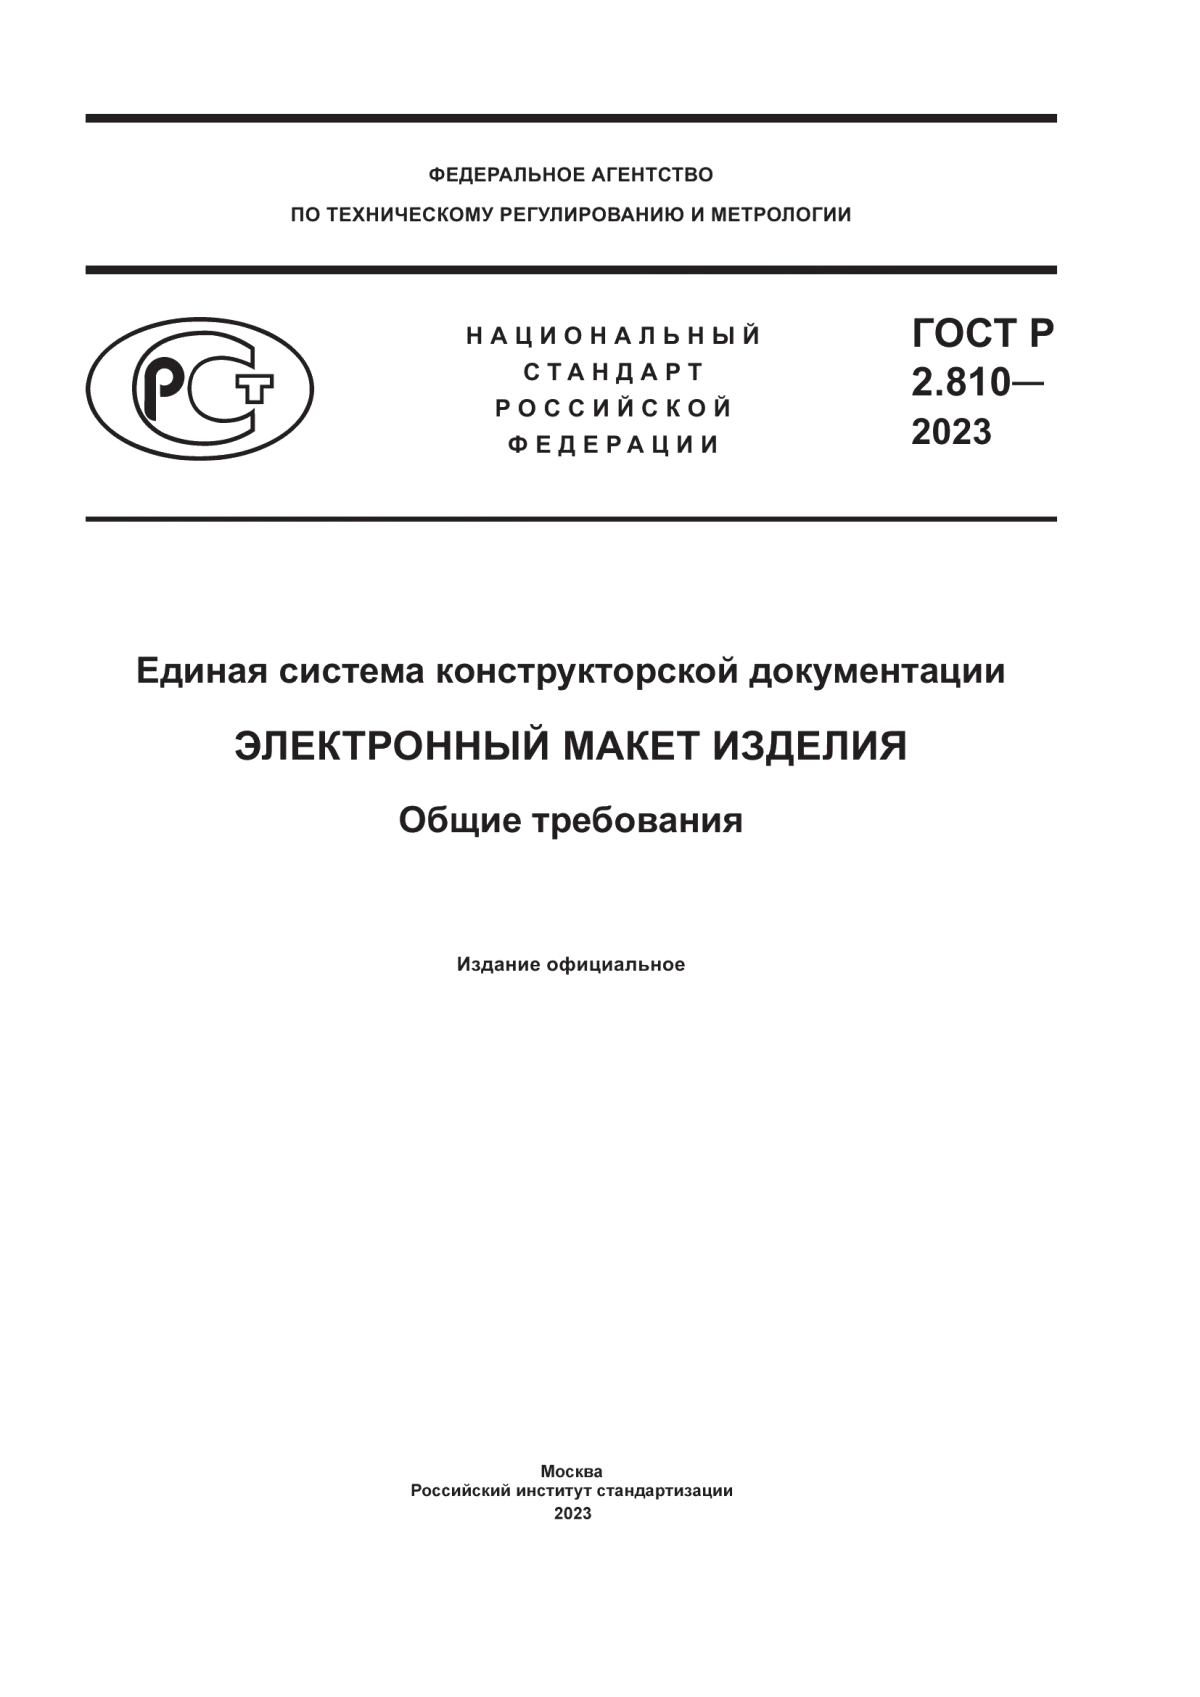 ГОСТ Р 2.810-2023 Единая система конструкторской документации. Электронный макет изделия. Общие требования